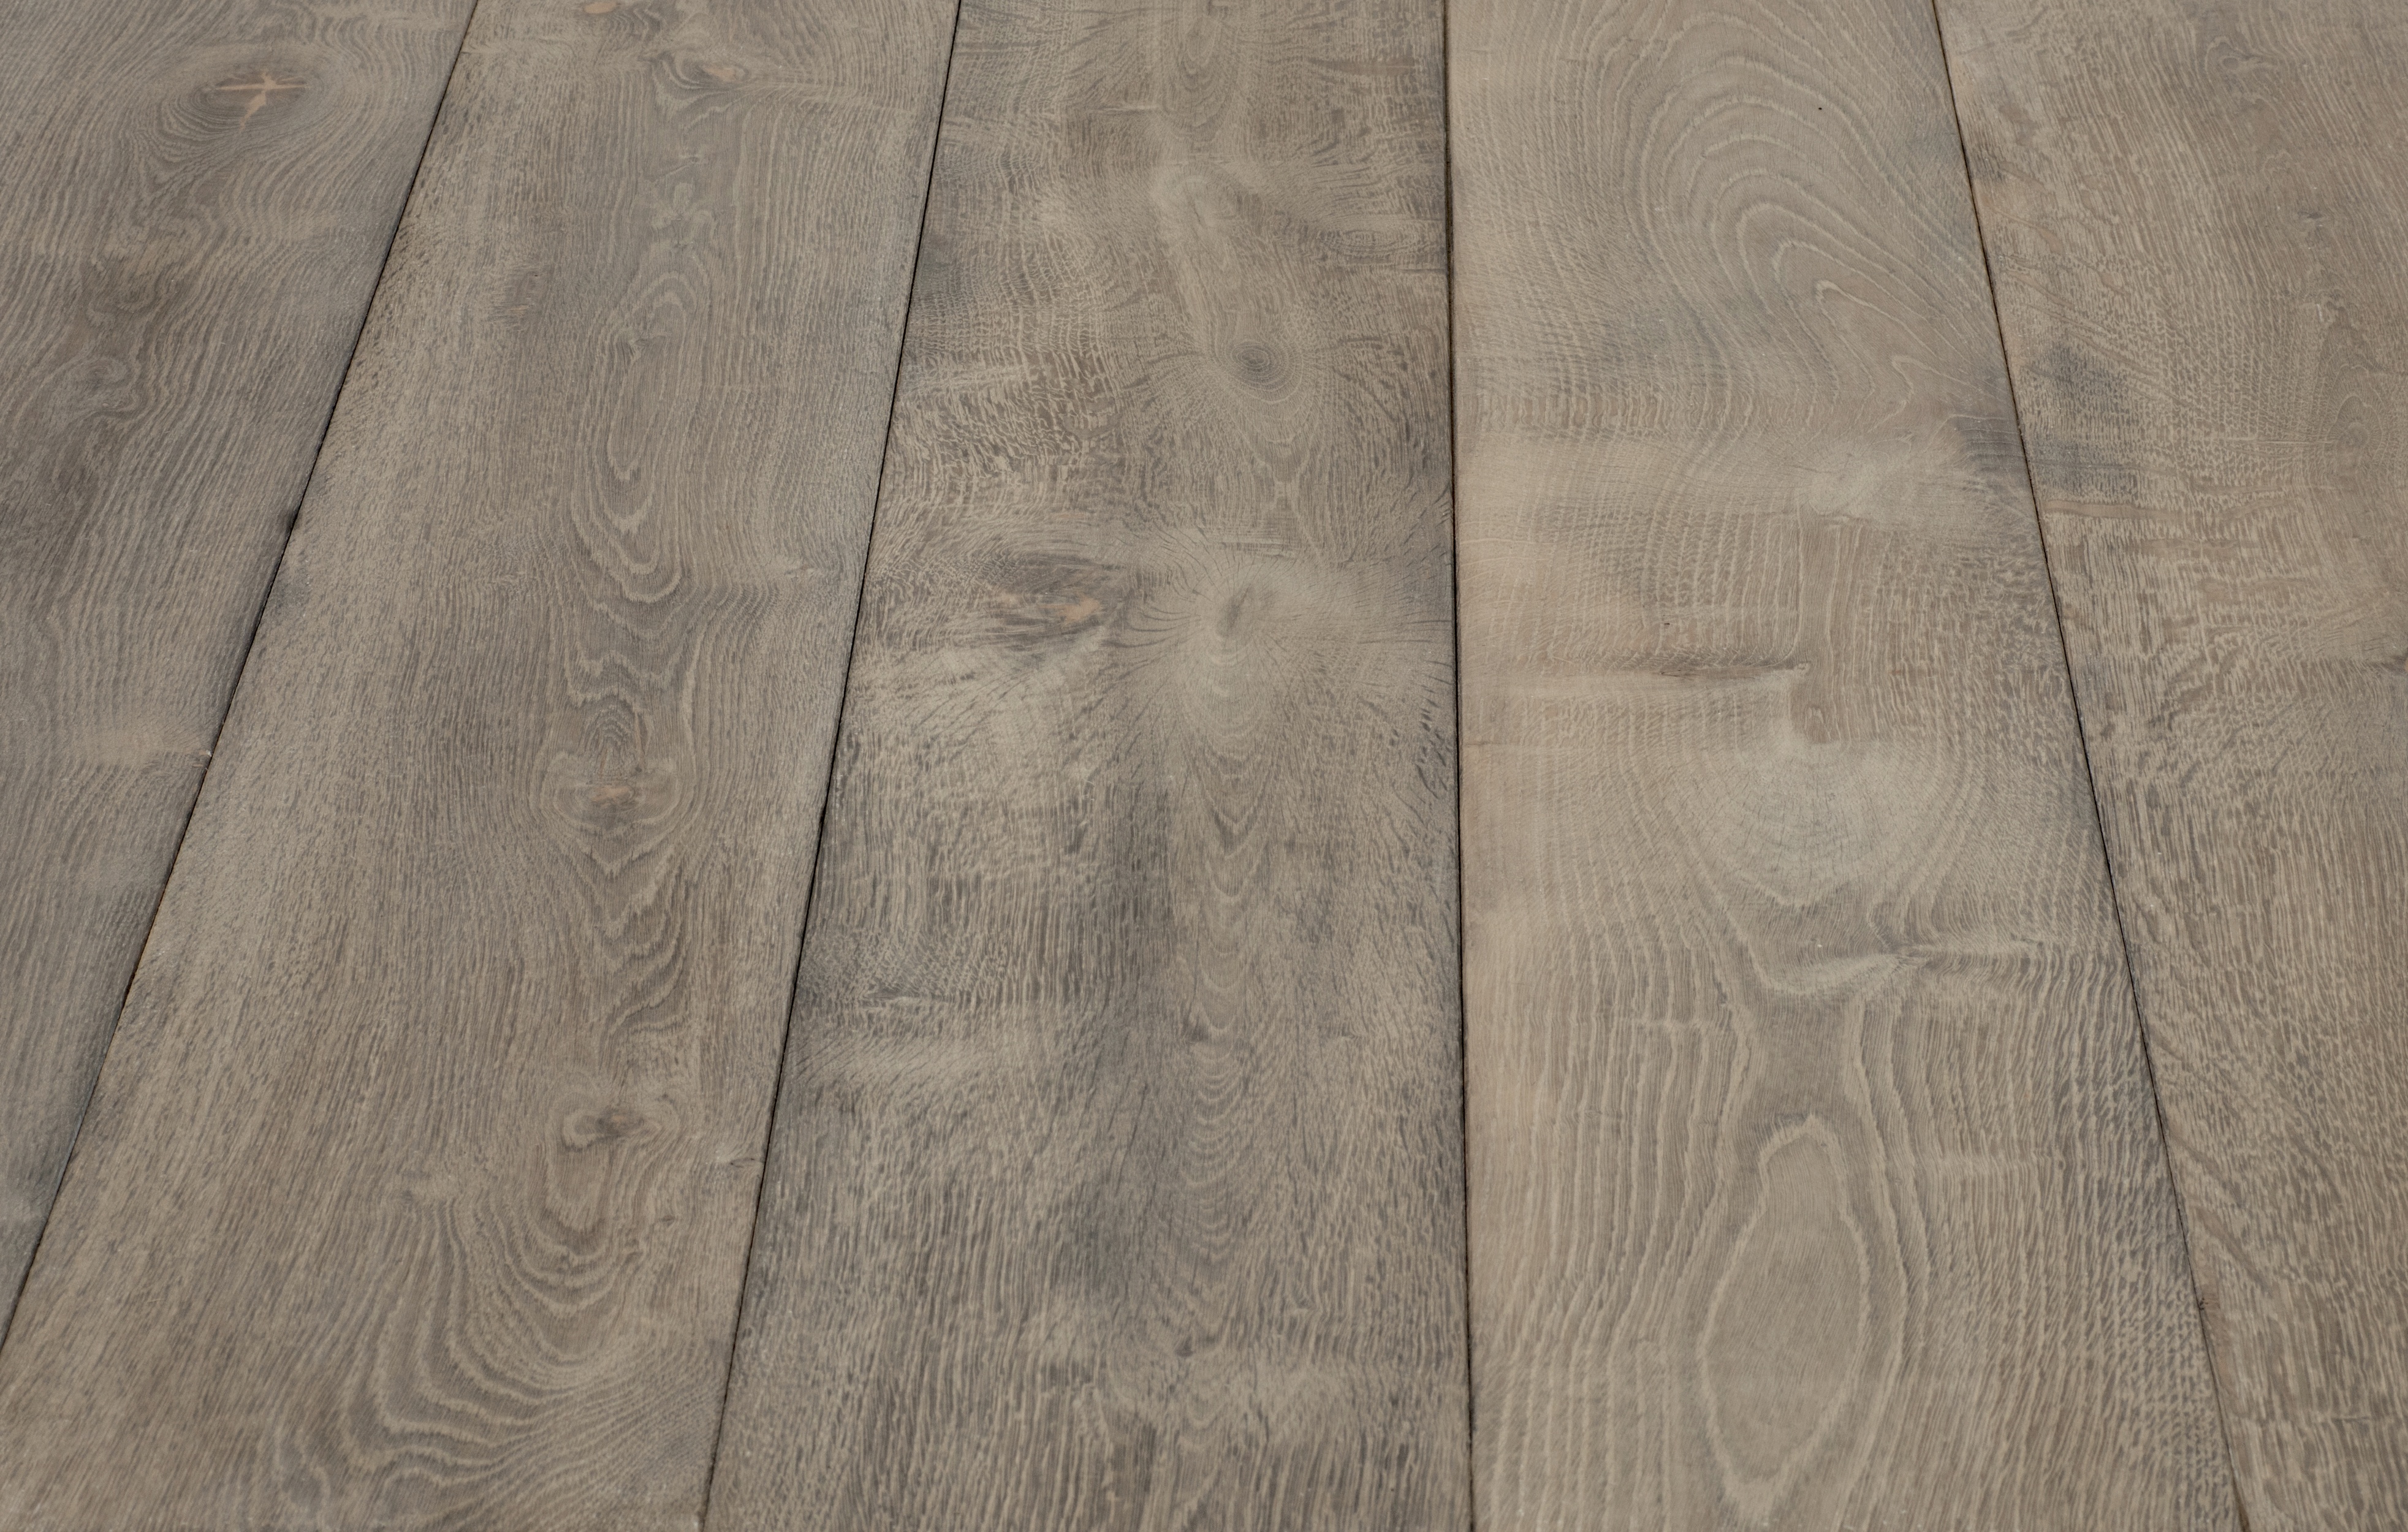 Stockholm Engineered Wood Flooring - UK